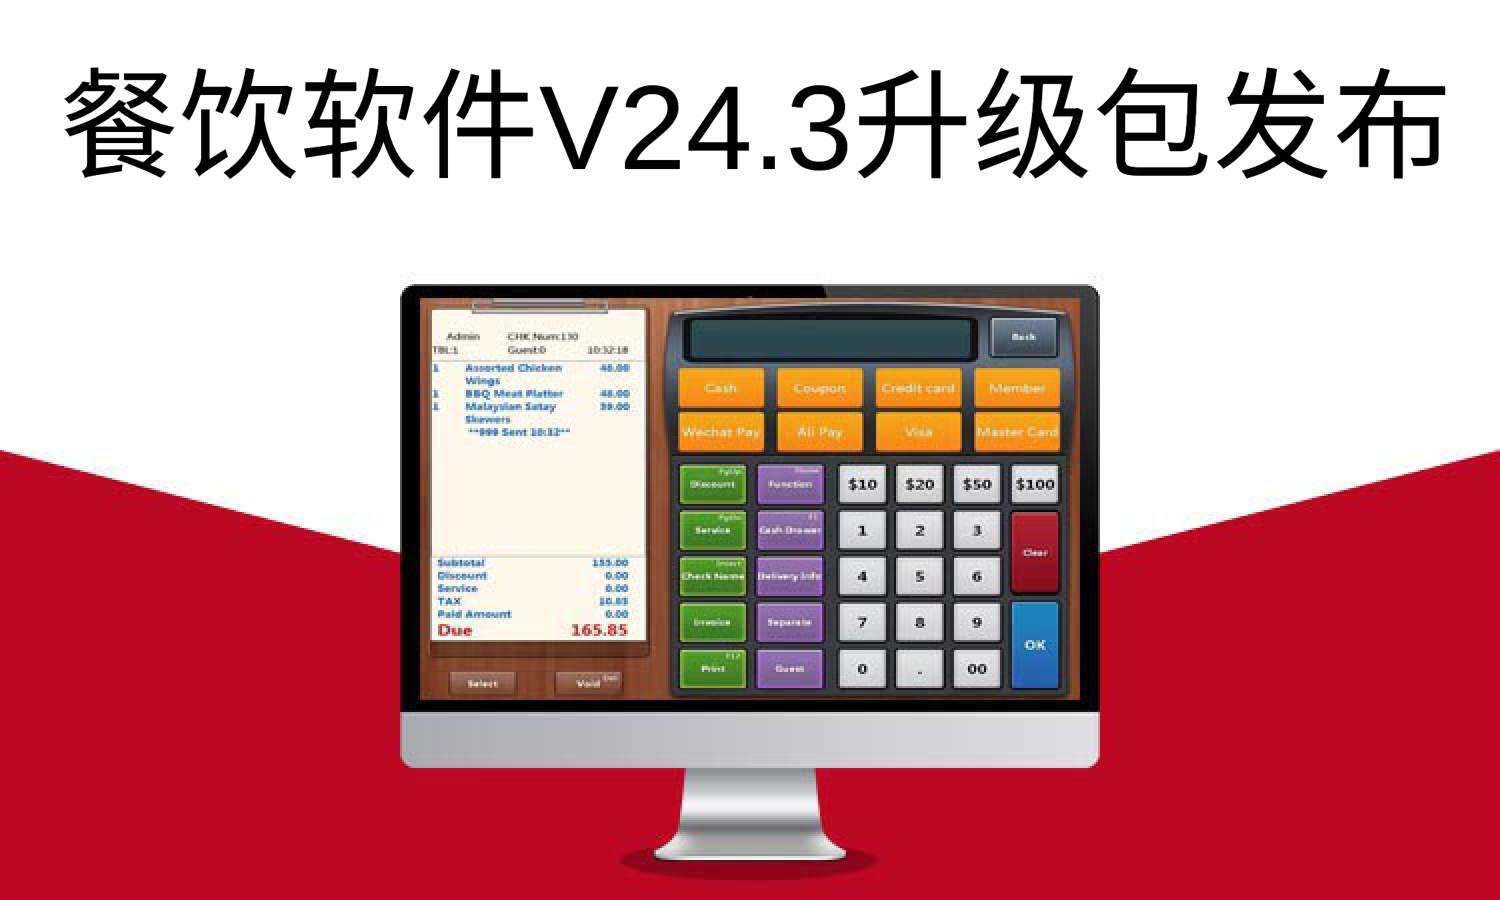 聚客 | 餐饮软件V24.3升级包发布